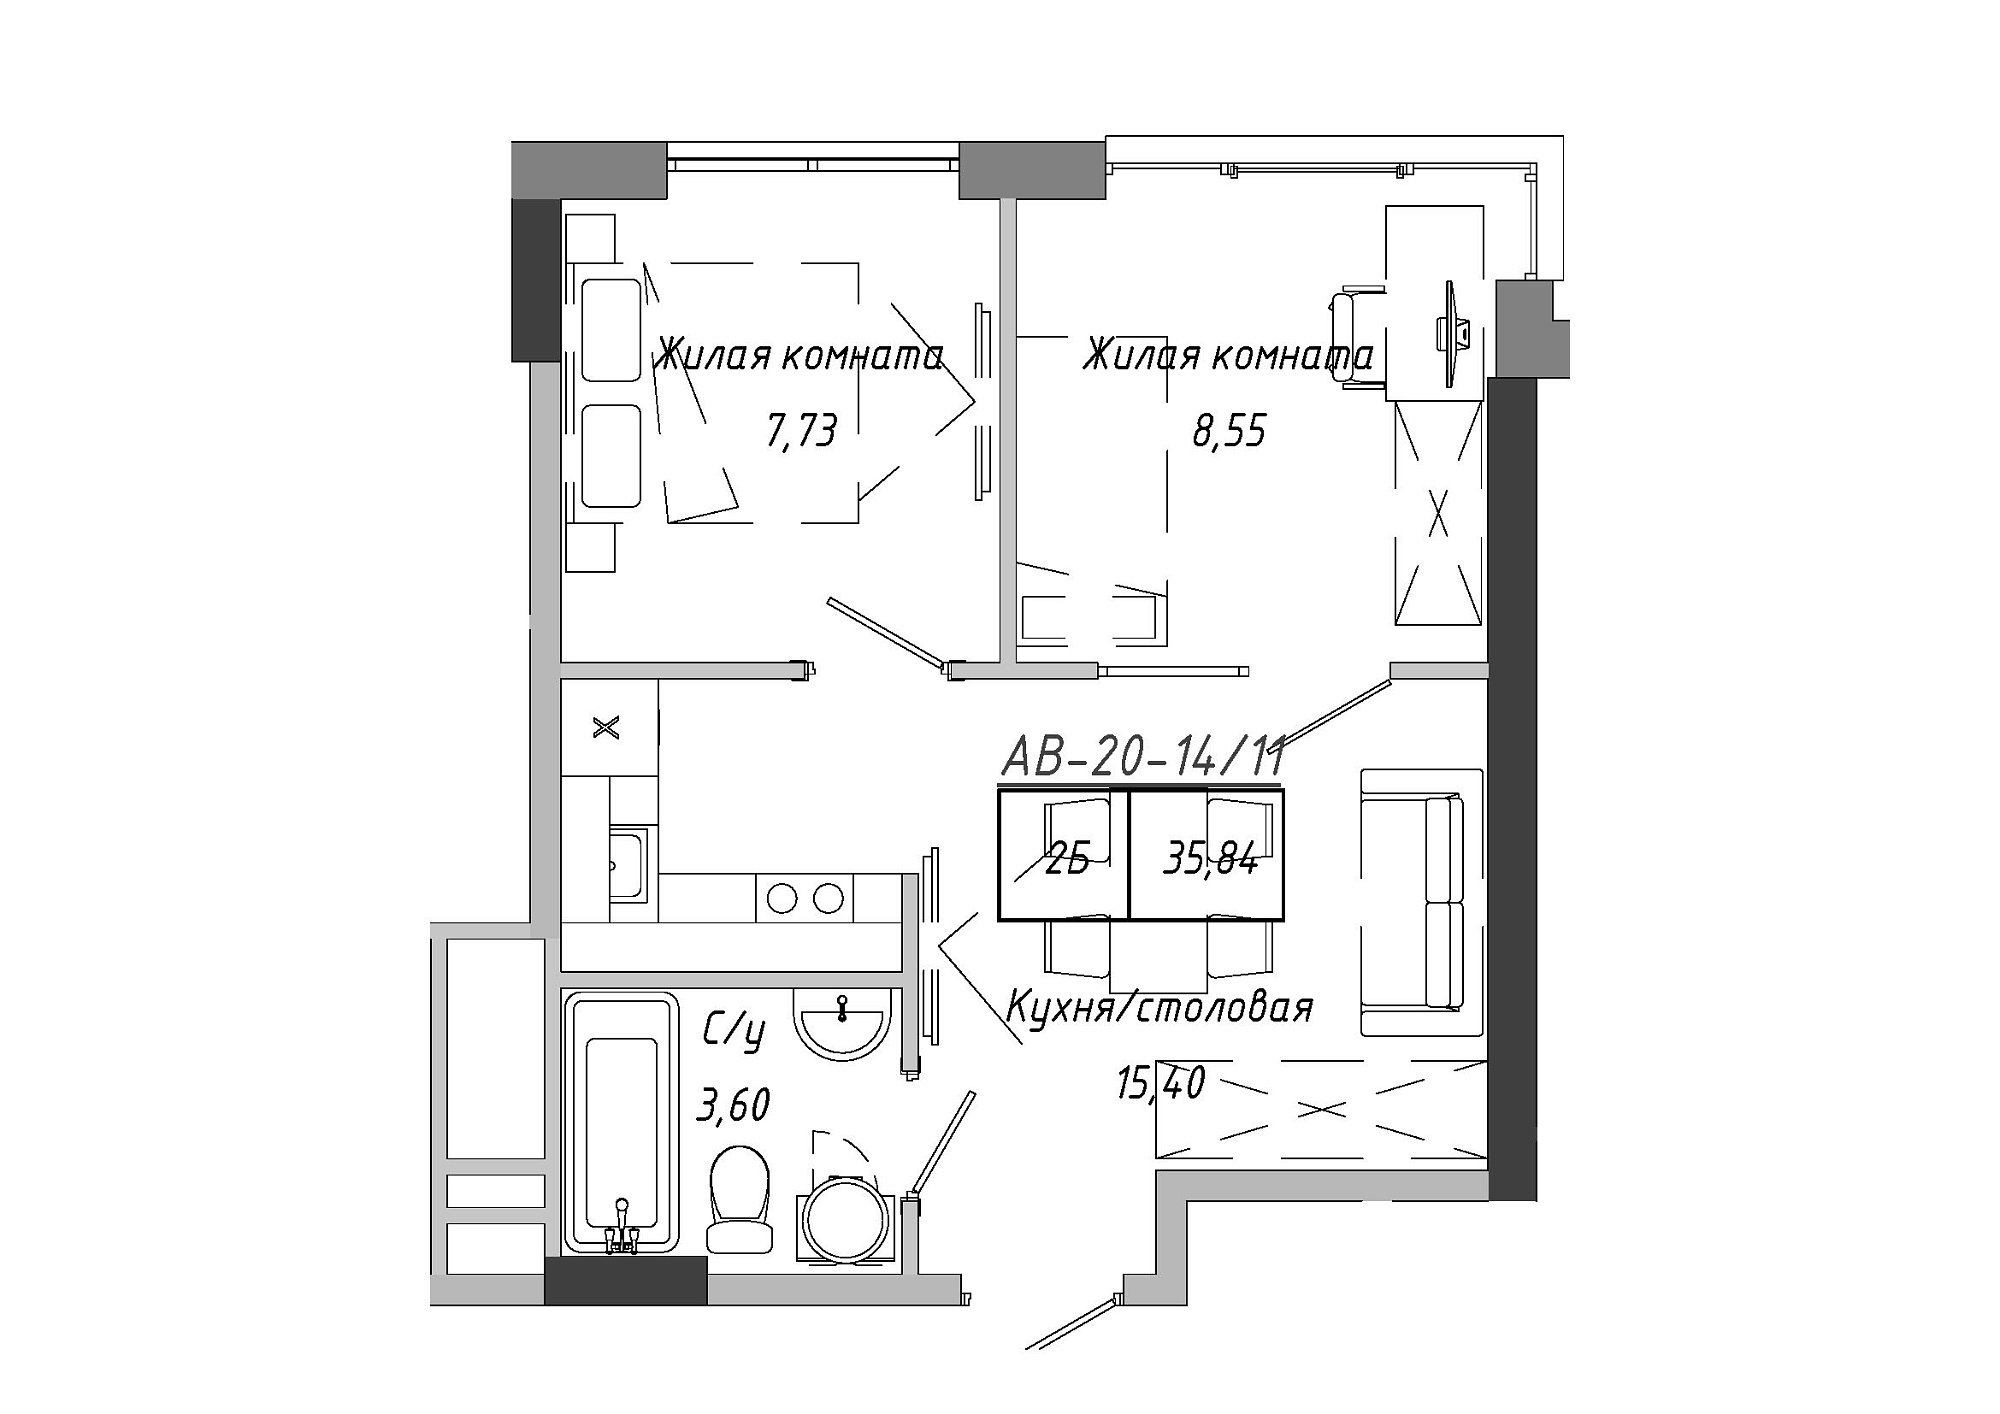 Планировка 2-к квартира площей 35.84м2, AB-20-14/00111.